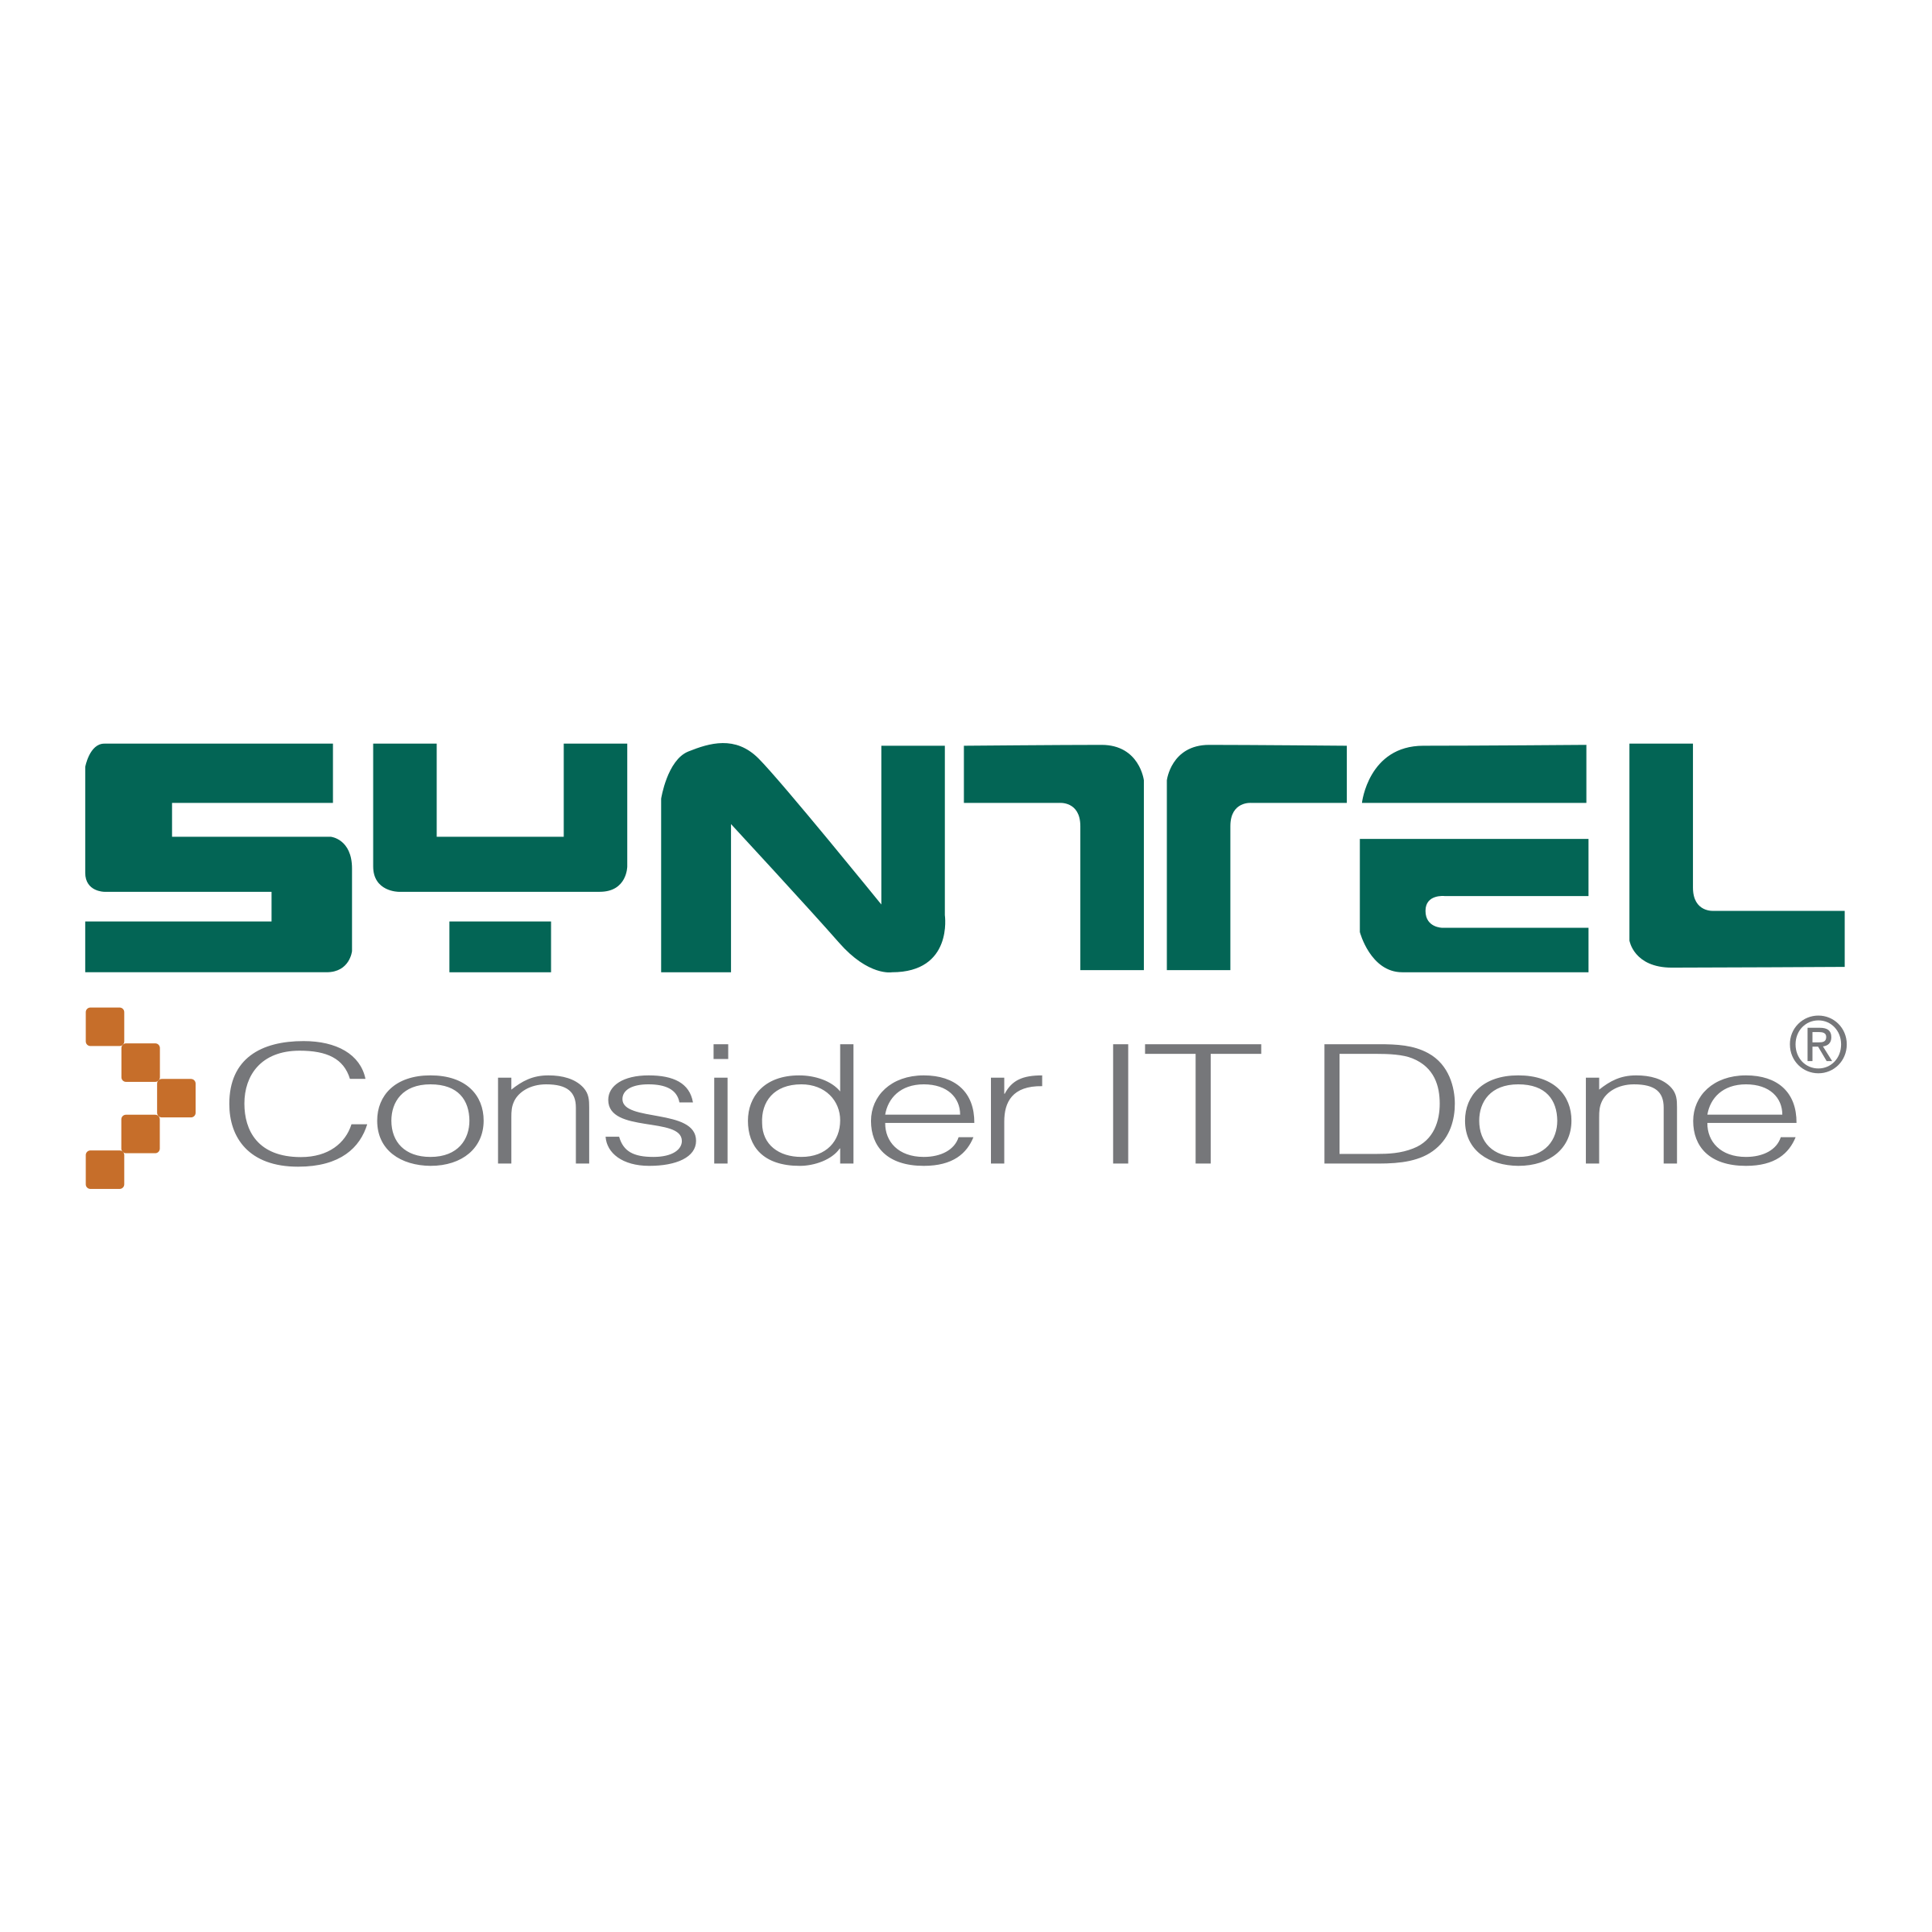 Syntel logo